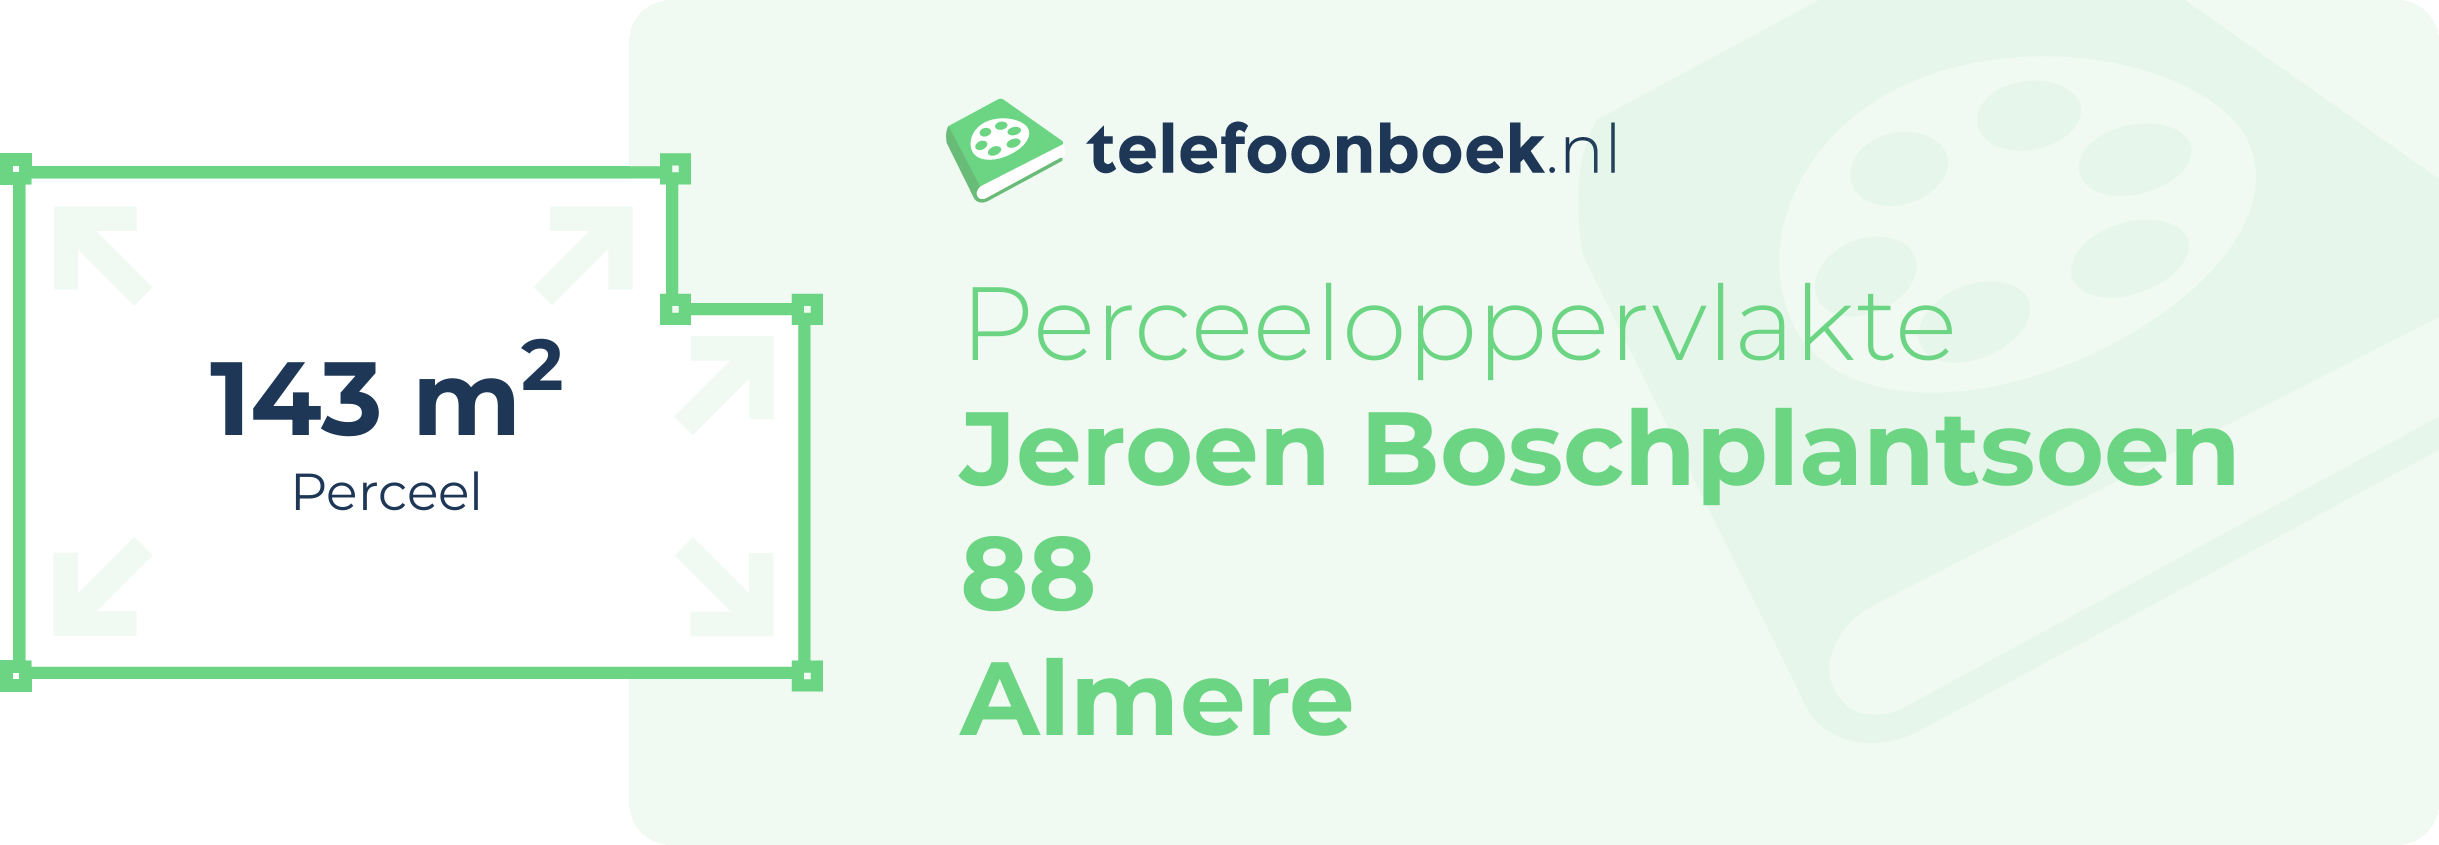 Perceeloppervlakte Jeroen Boschplantsoen 88 Almere